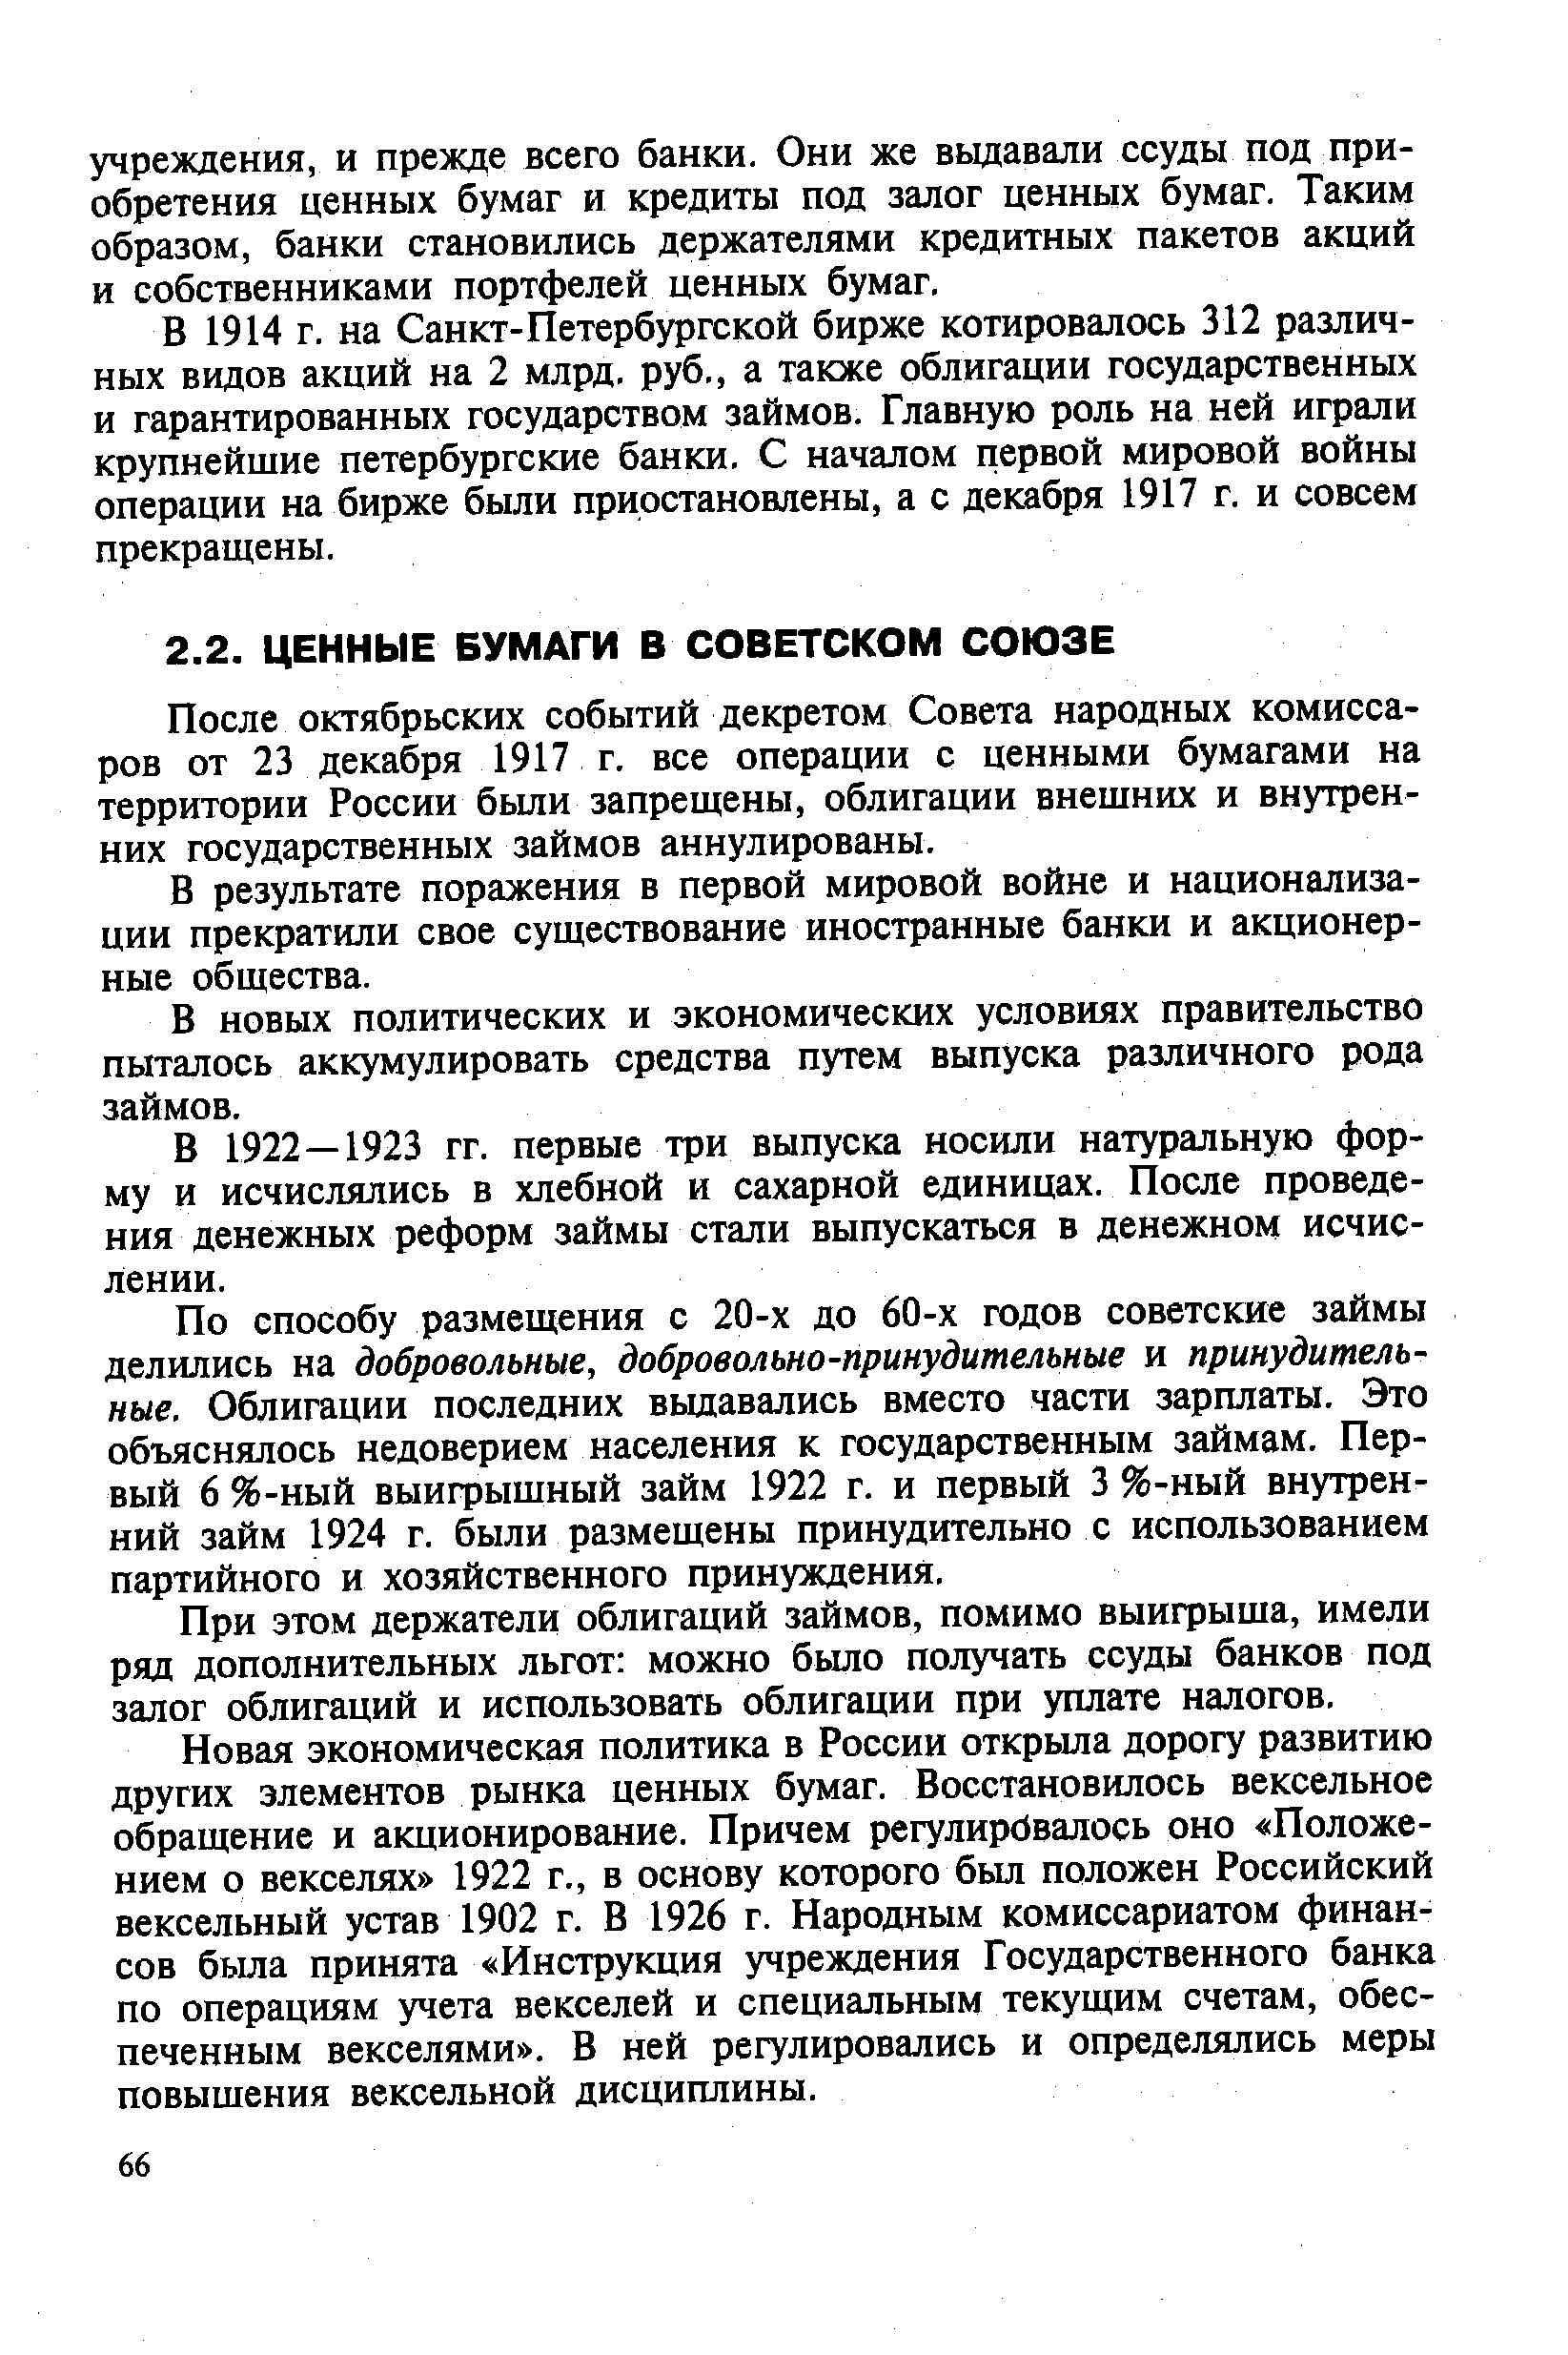 После октябрьских событий декретом Совета народных комиссаров от 23 декабря 1917 г. все операции с ценными бумагами на территории России были запрещены, облигации внешних и внутренних государственных займов аннулированы.
